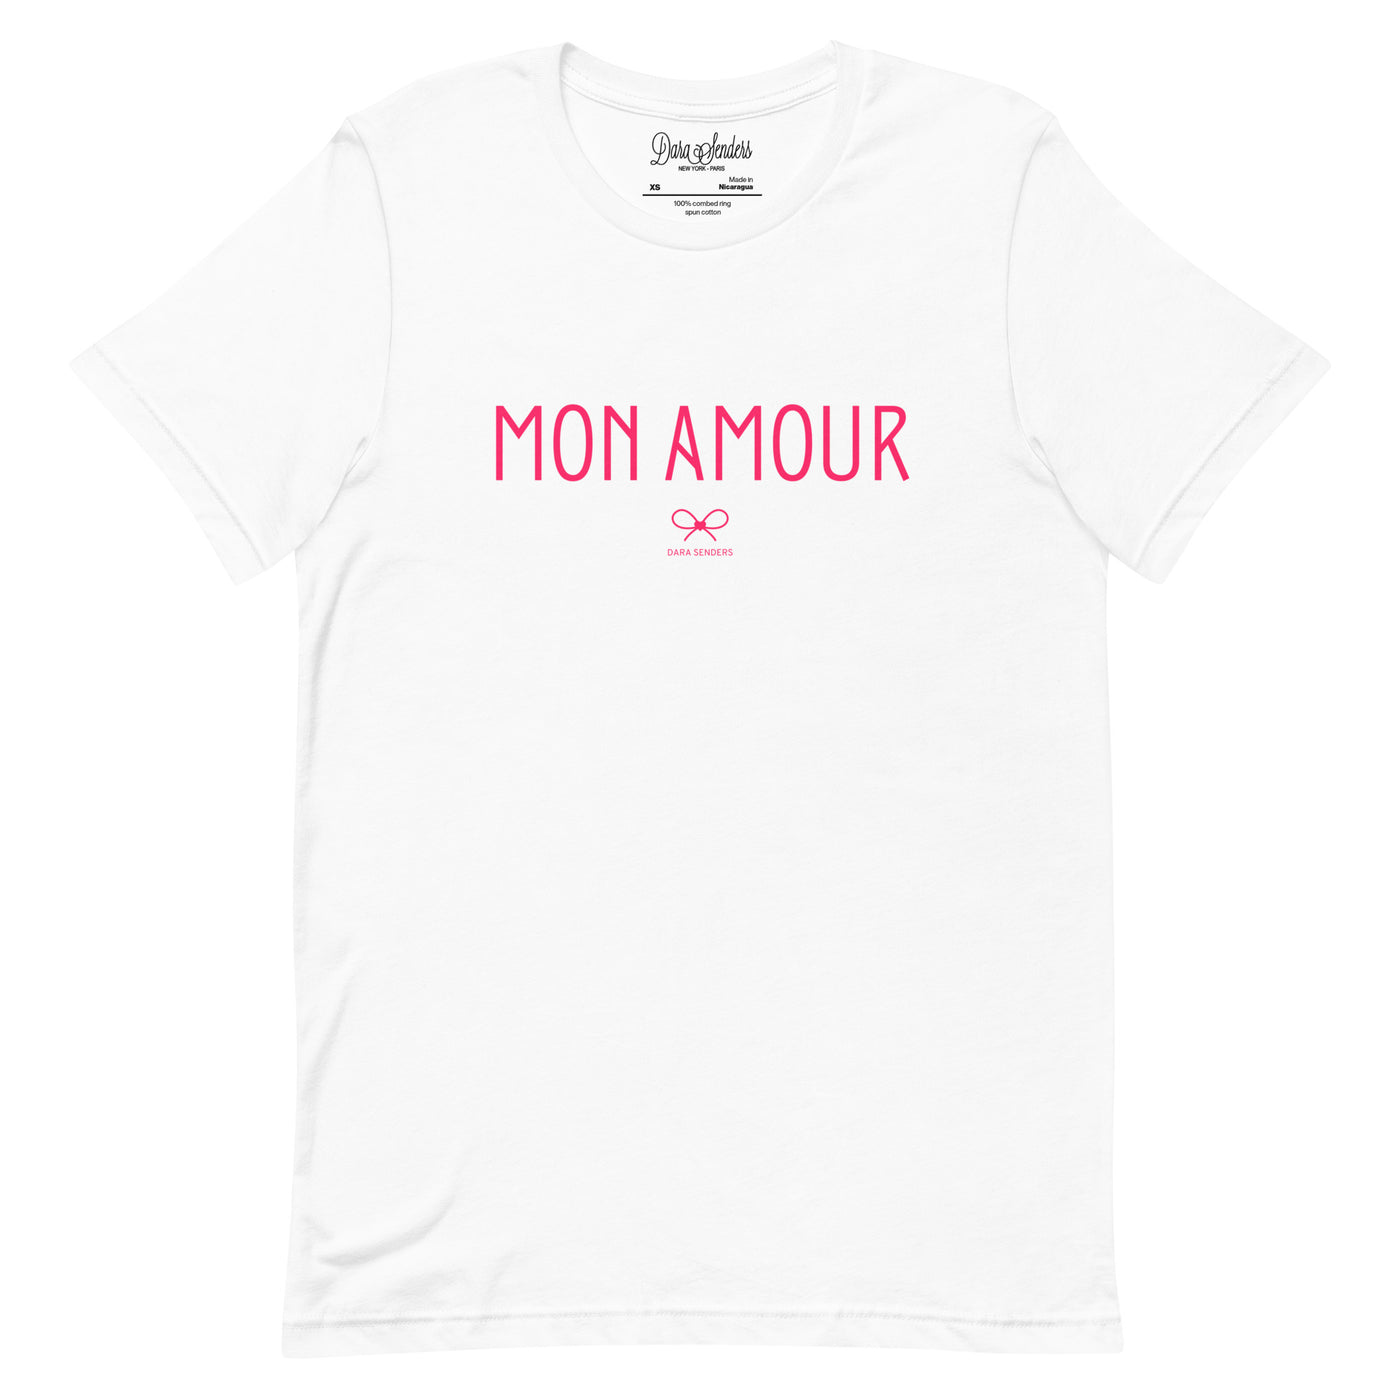 MON AMOUR T-SHIRT